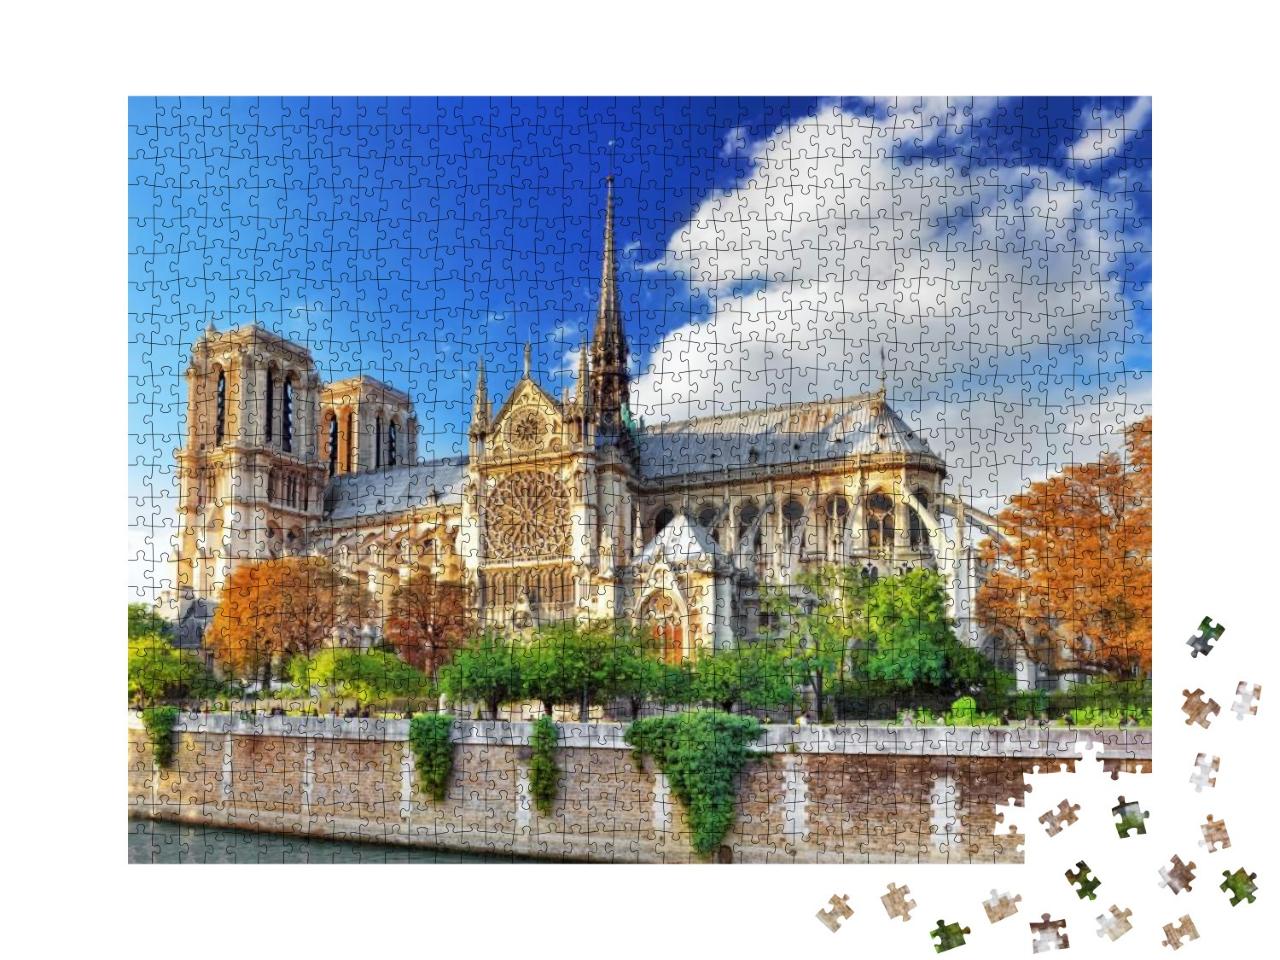 Notre Dame De Paris Cathedral. Paris. France... Jigsaw Puzzle with 1000 pieces